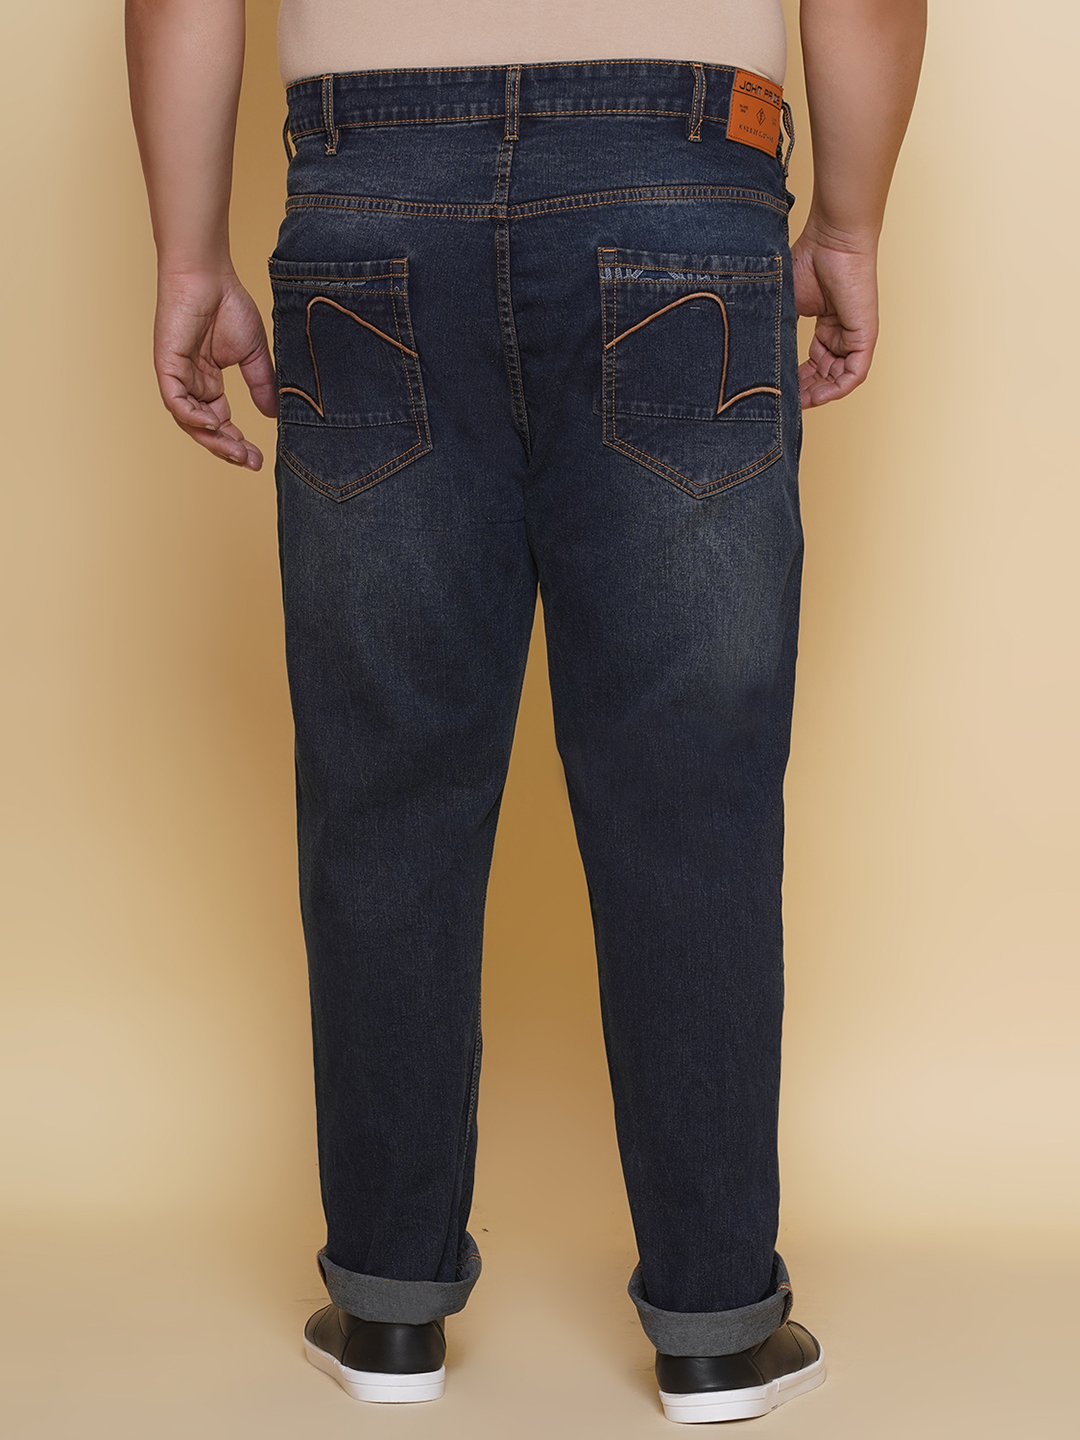 bottomwear/jeans/EJPJ25131/ejpj25131-5.jpg